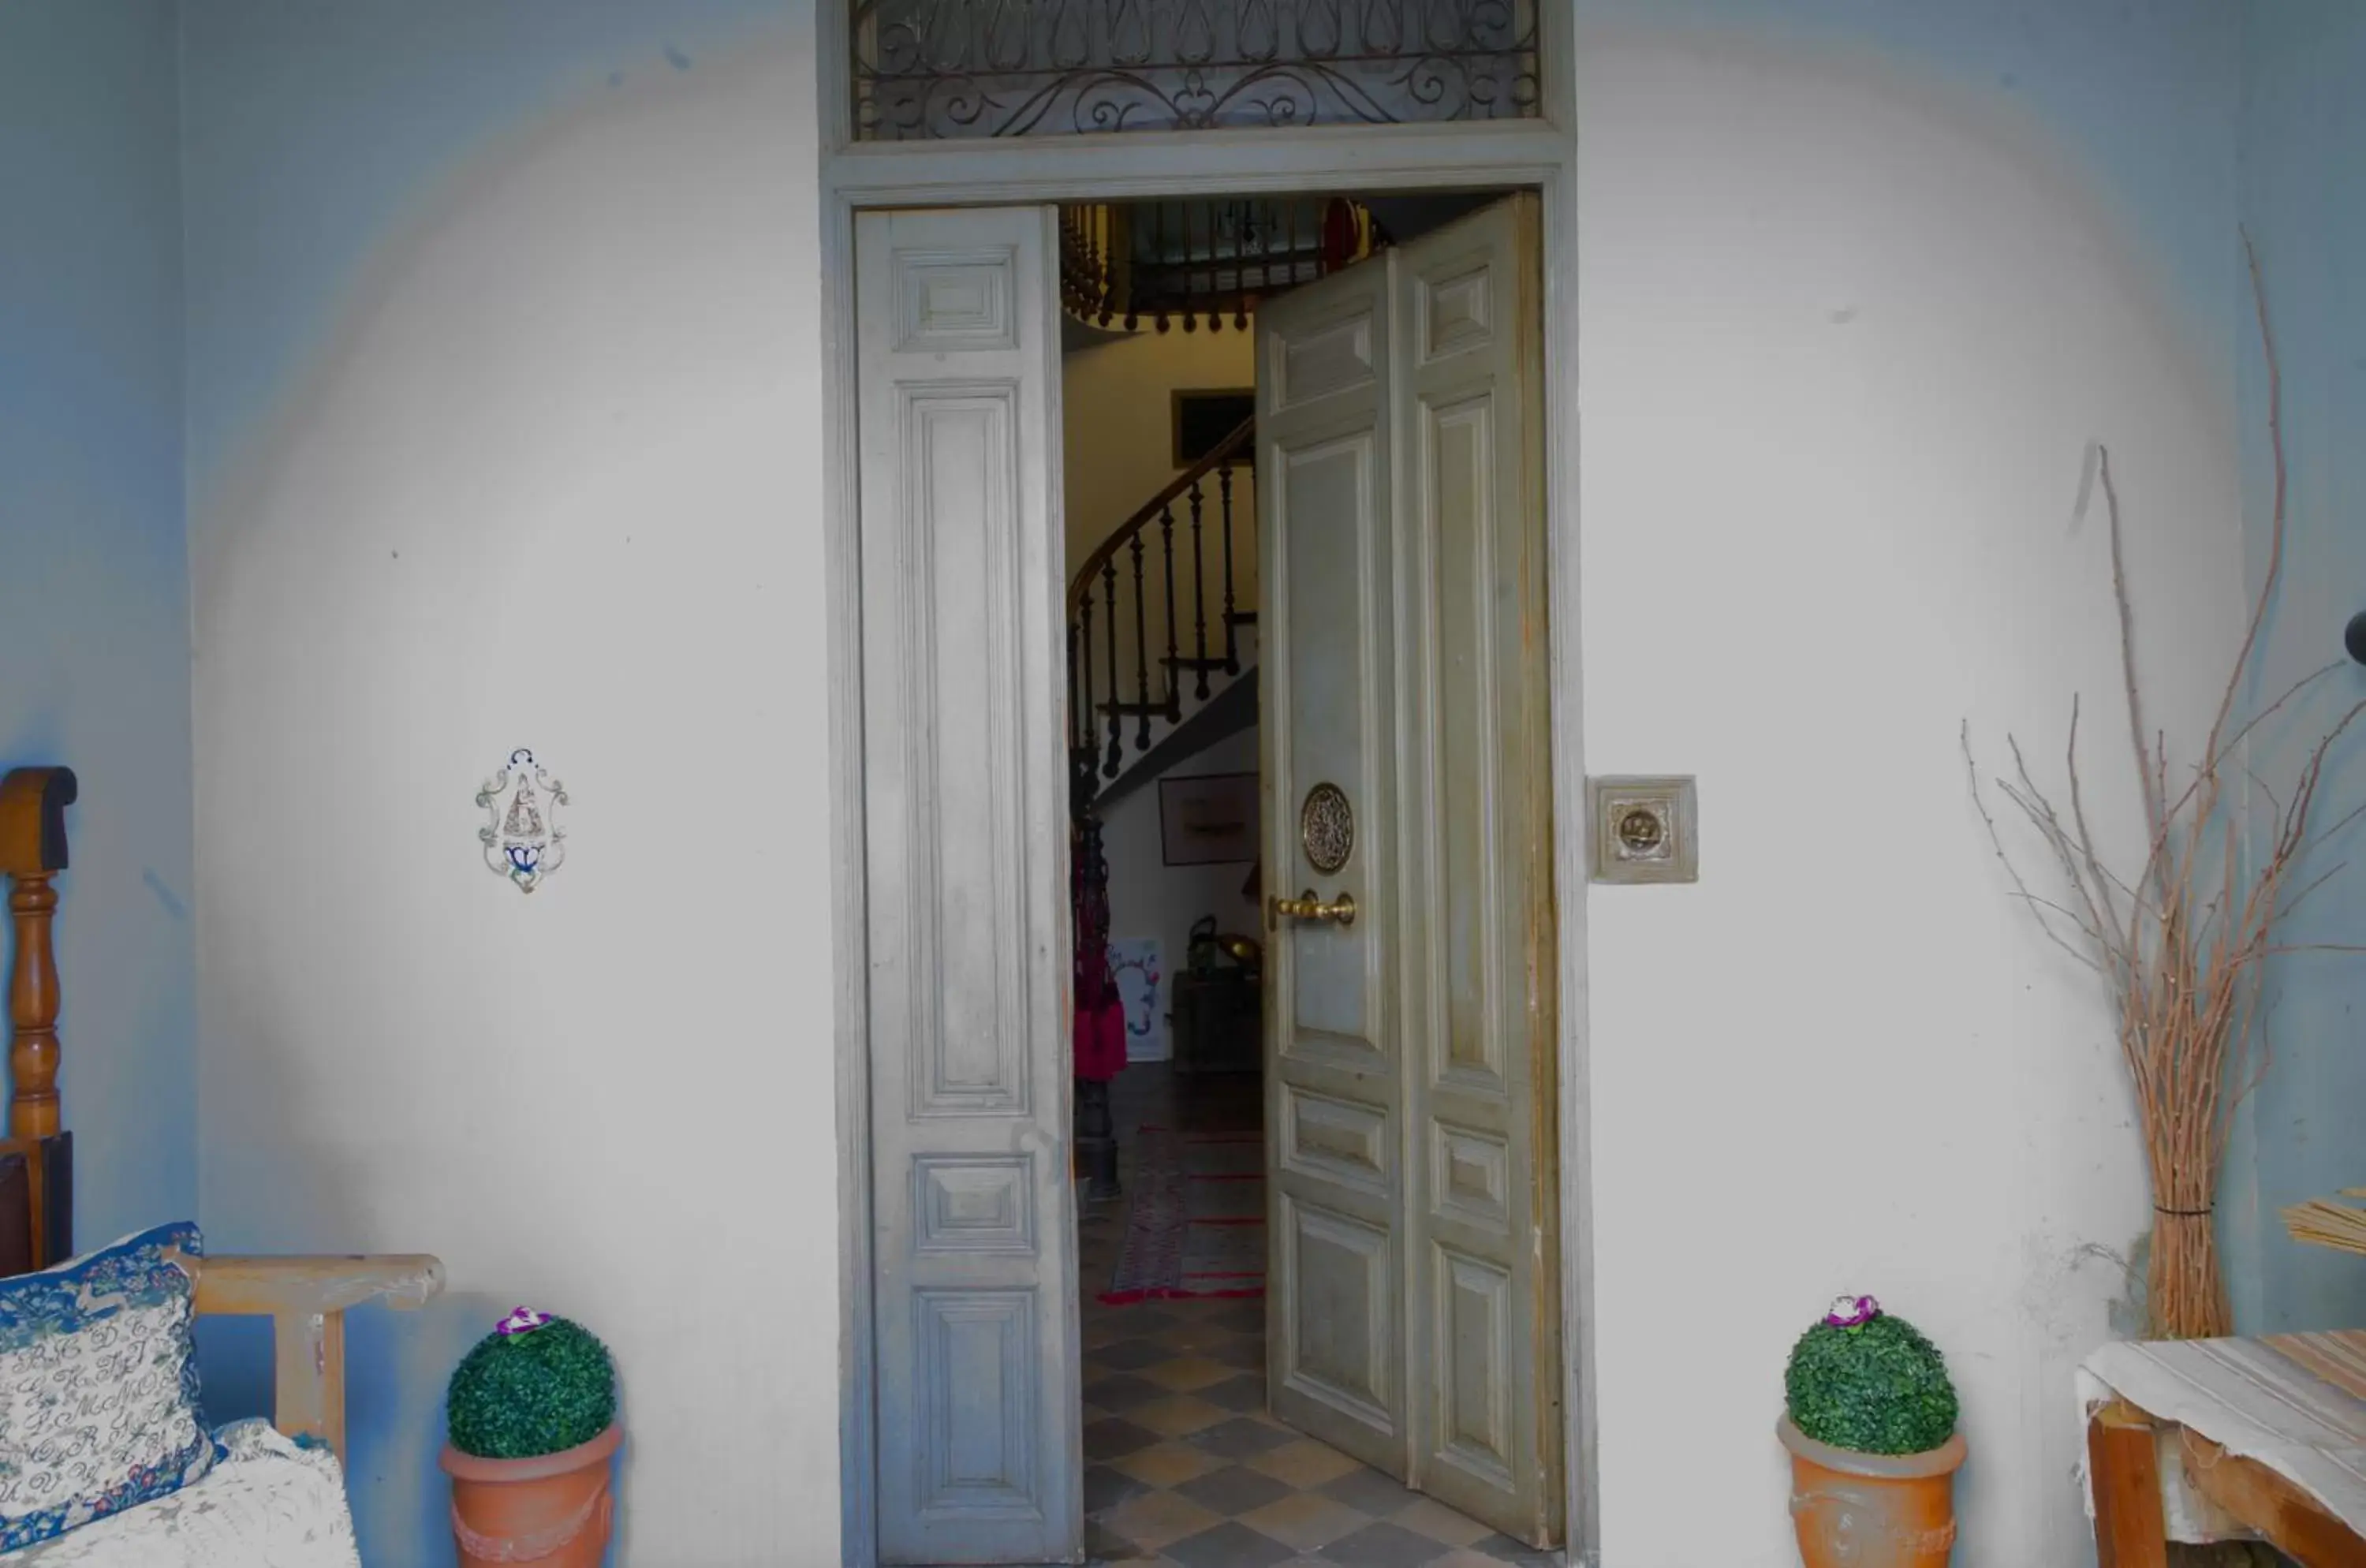 Lobby or reception in Olmitos 3 Hotel boutique, Casa-Palacio